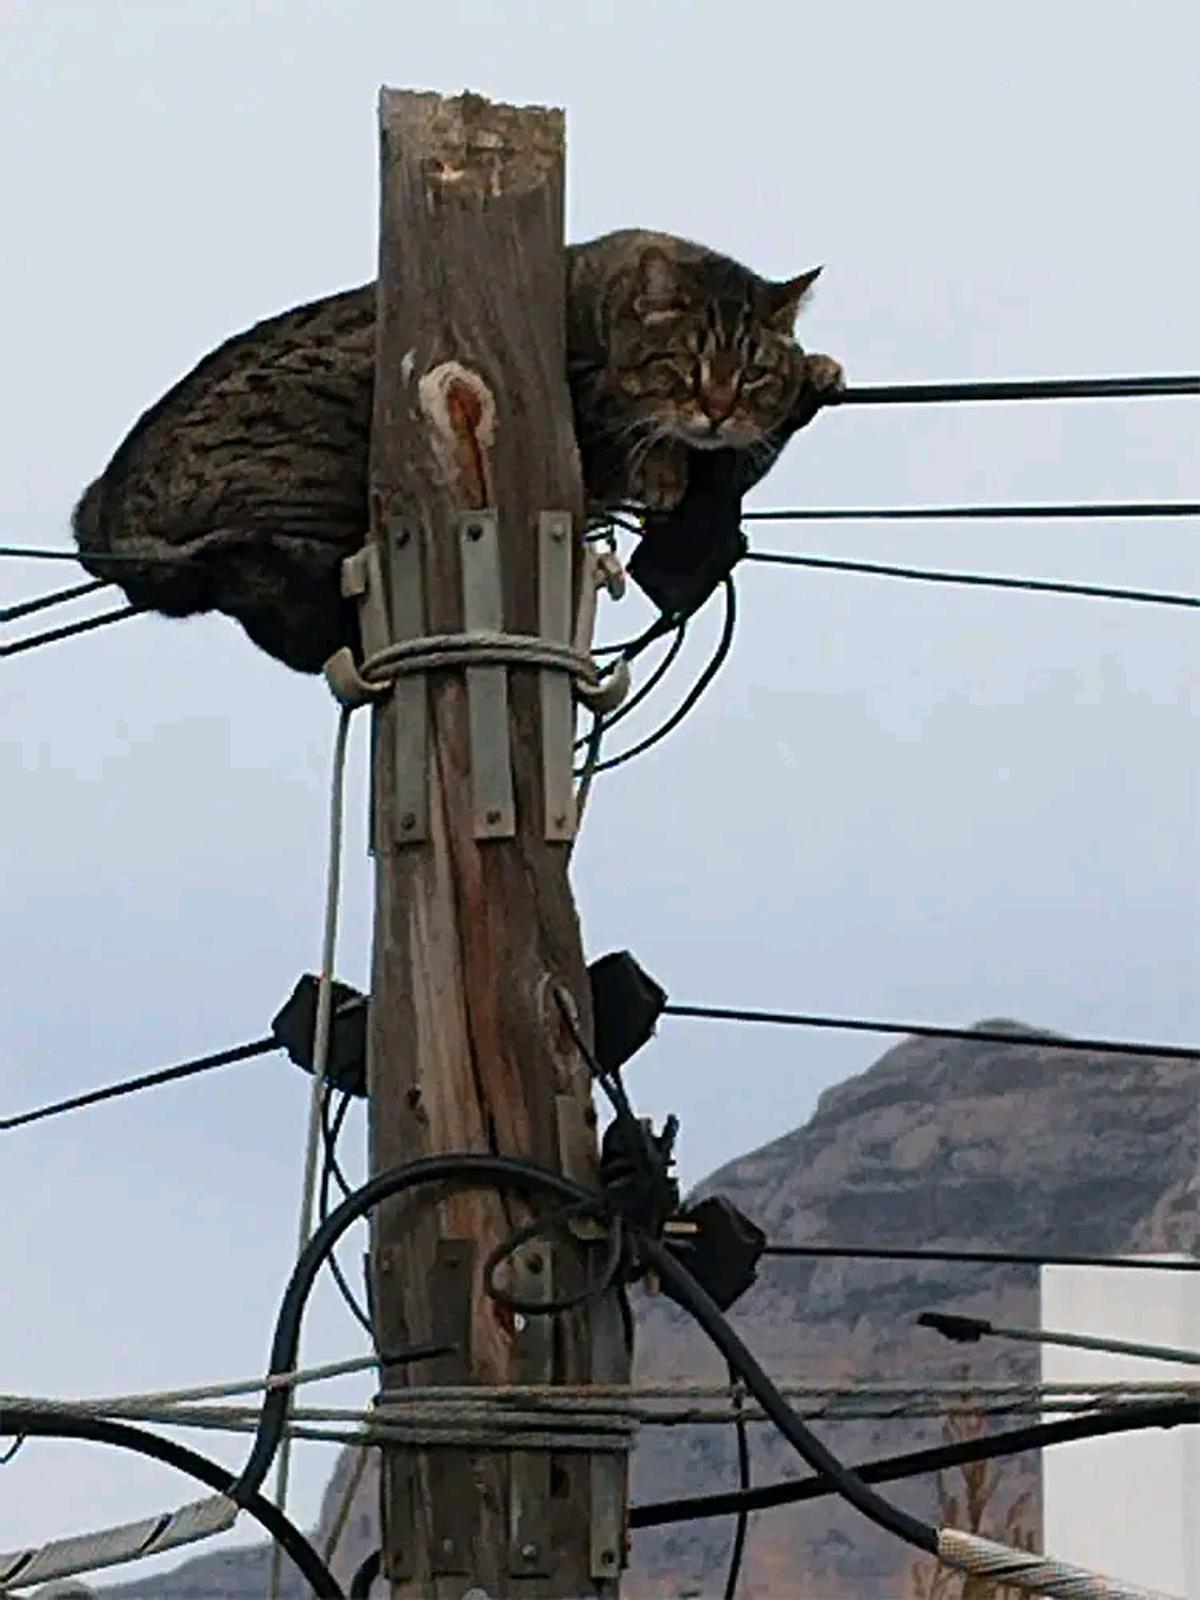 El gato, agarrado a los cables